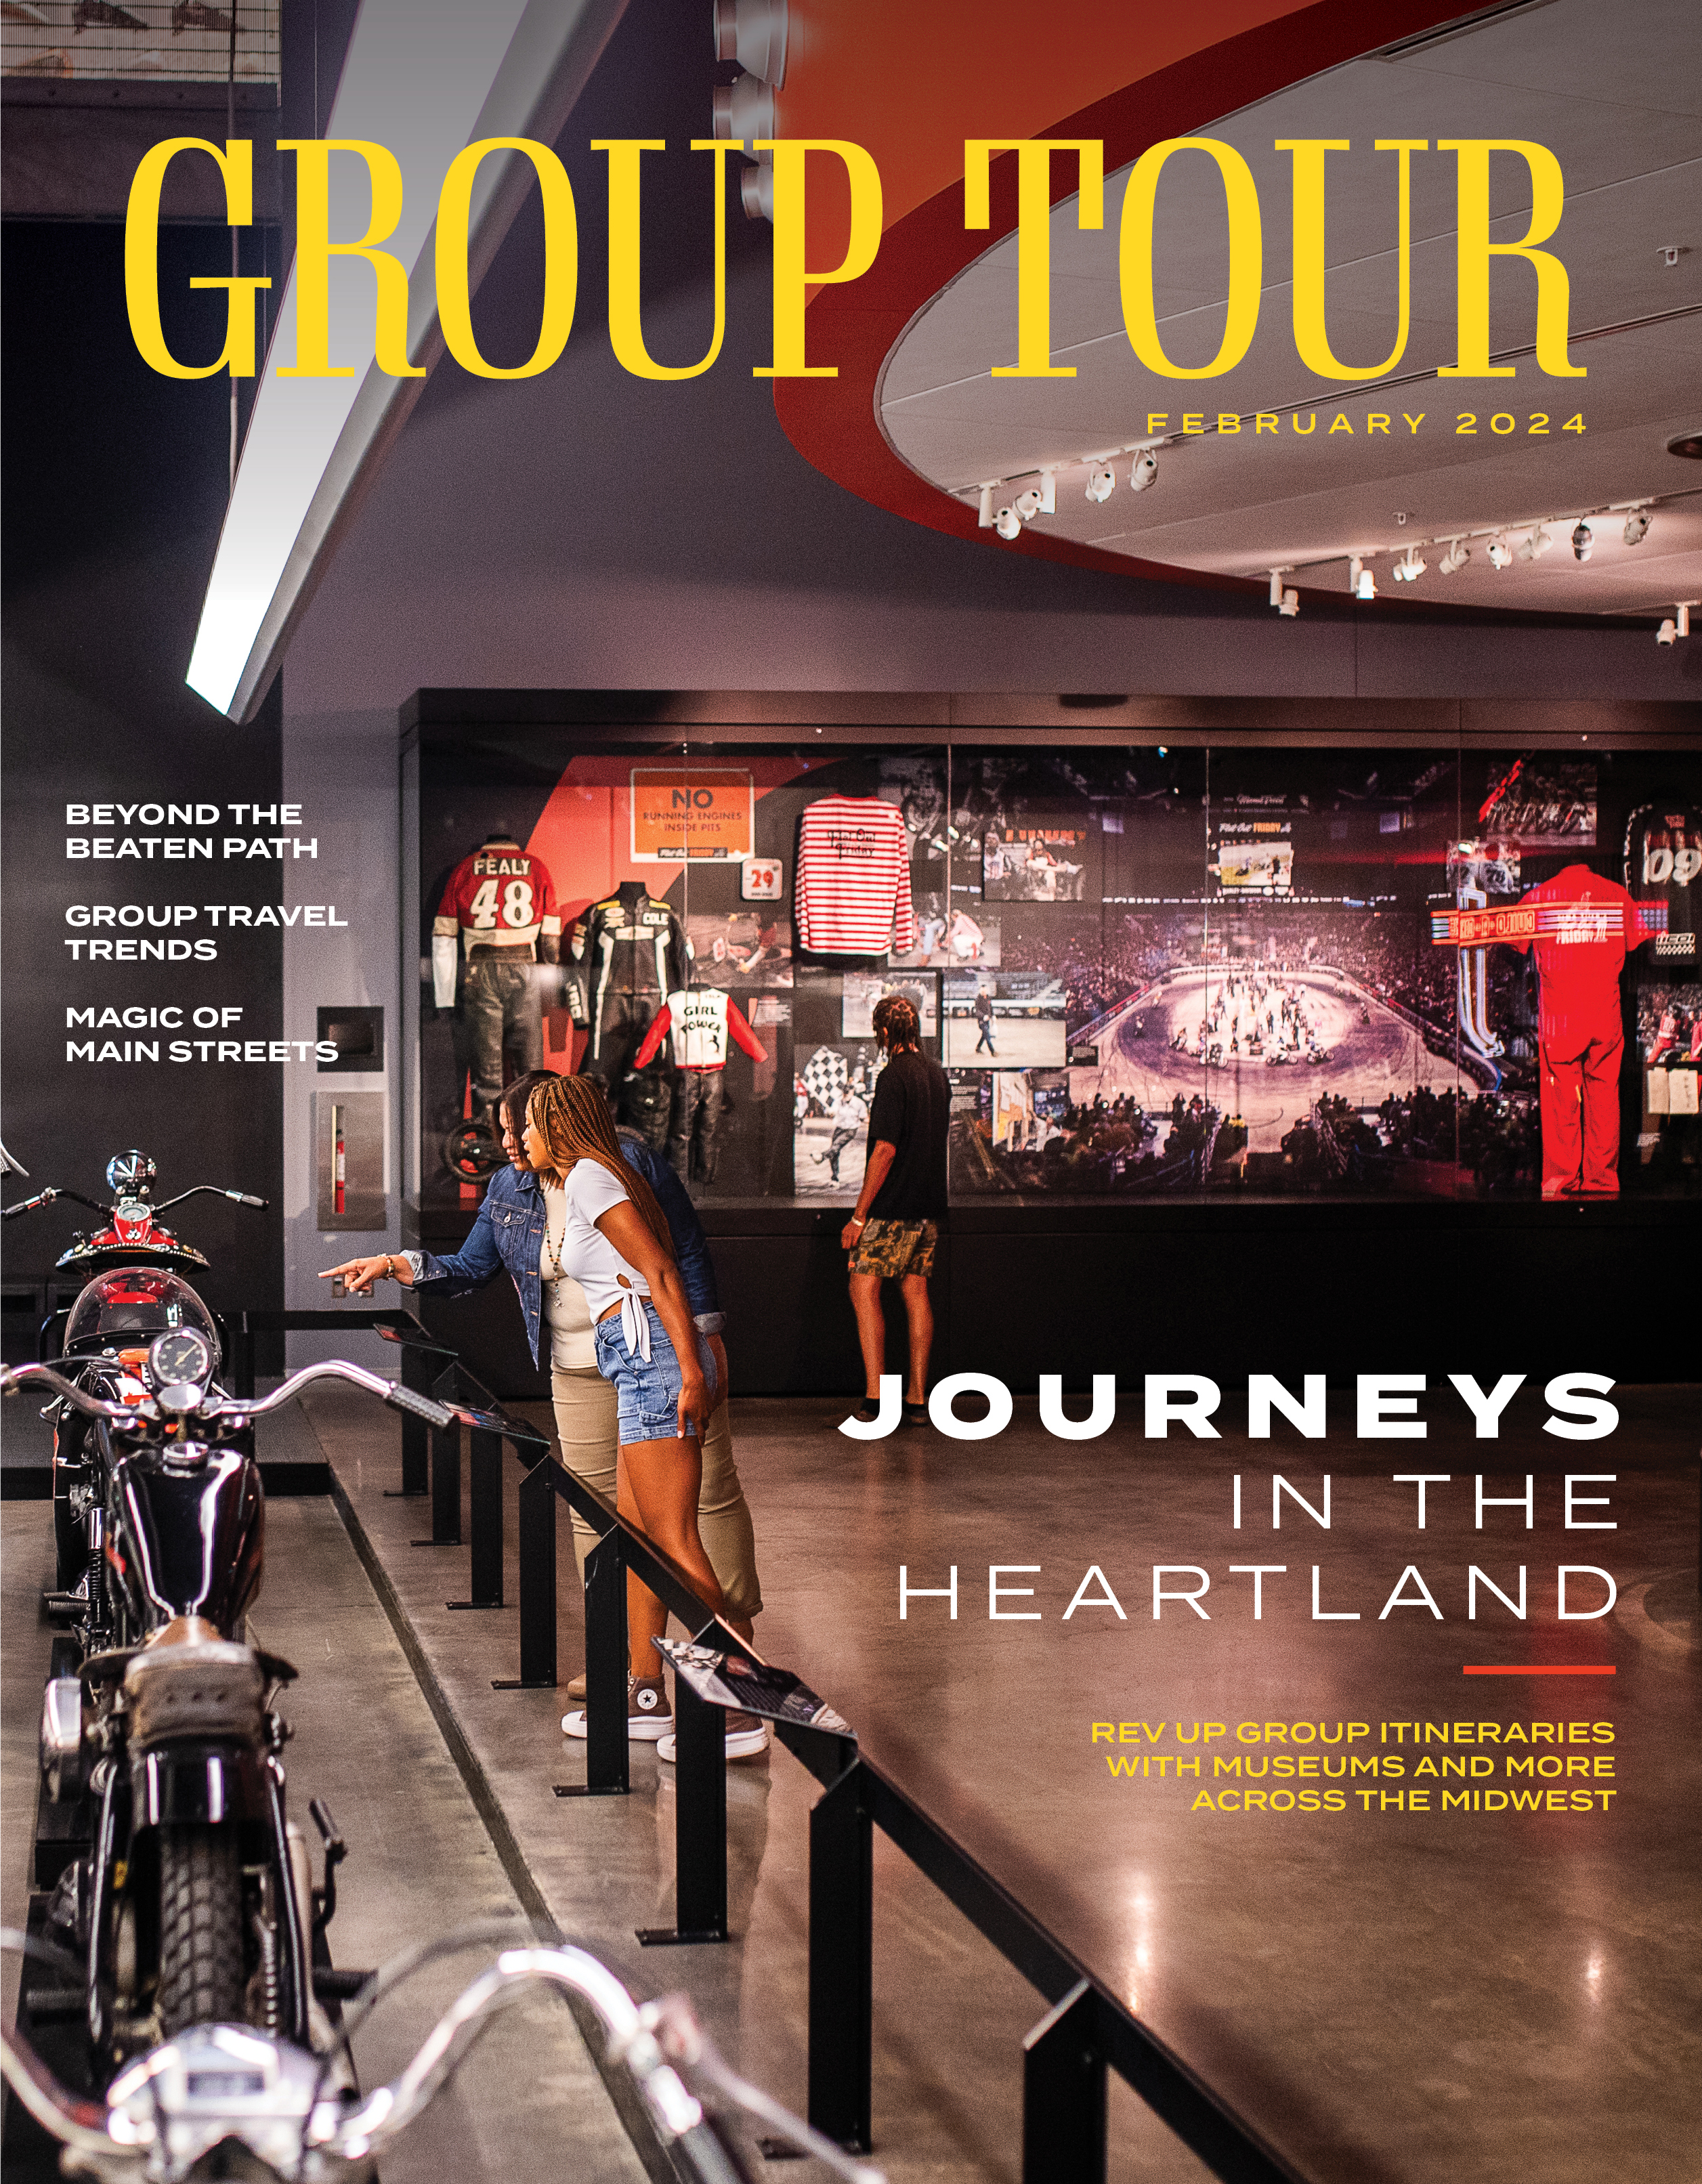 Group Tour Magazine